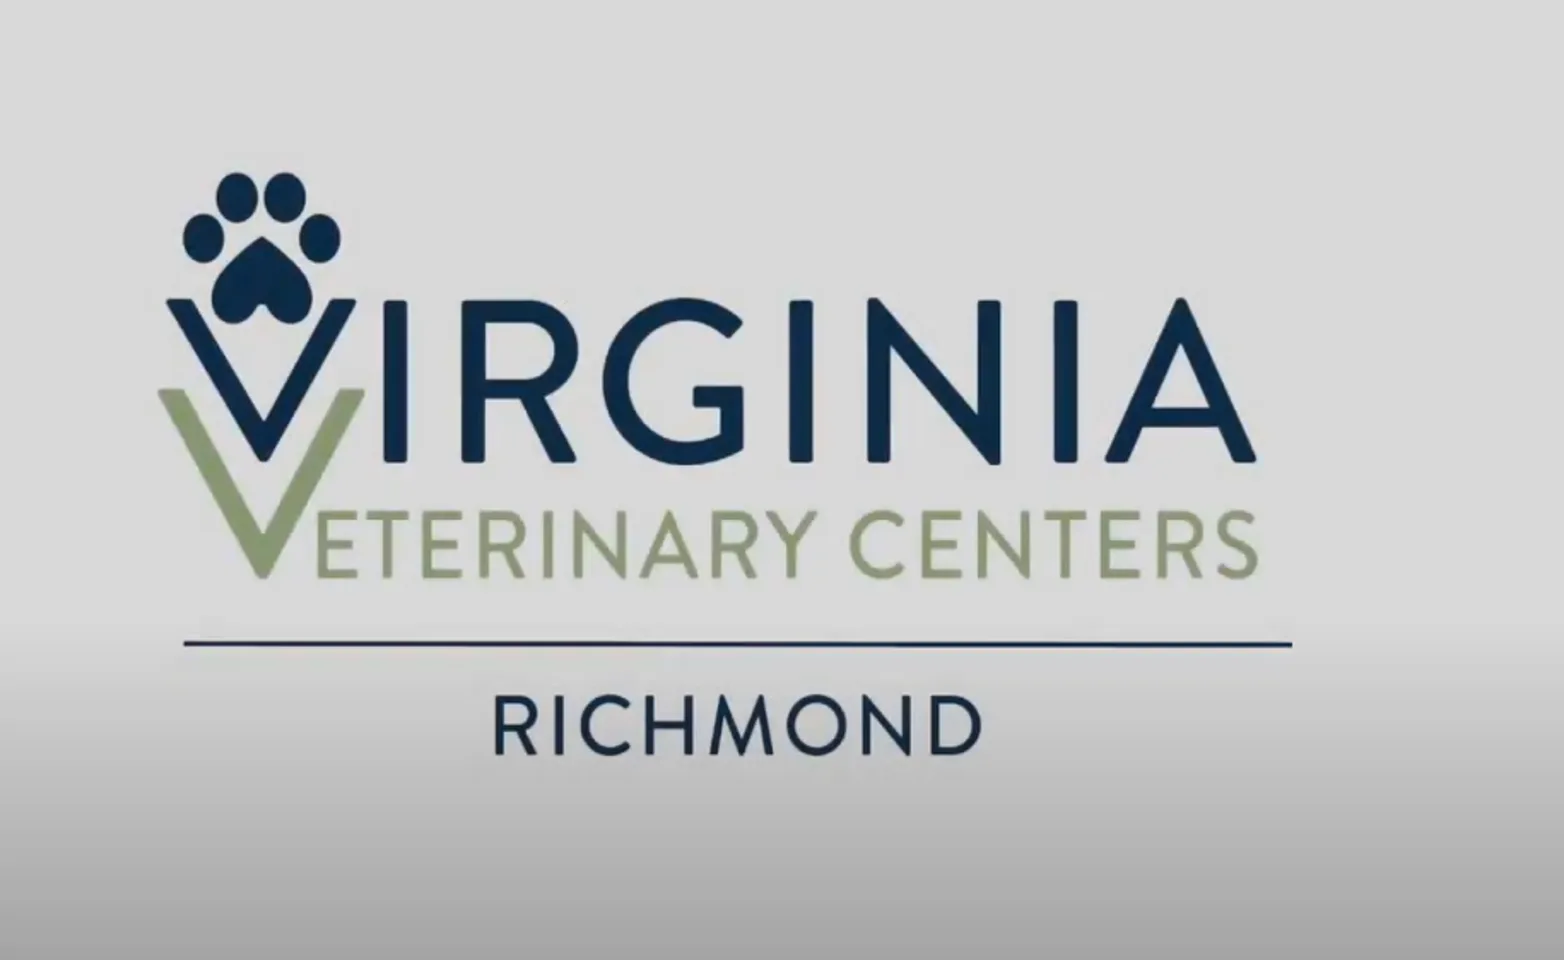 Virginia Veterinary Centers Richmond